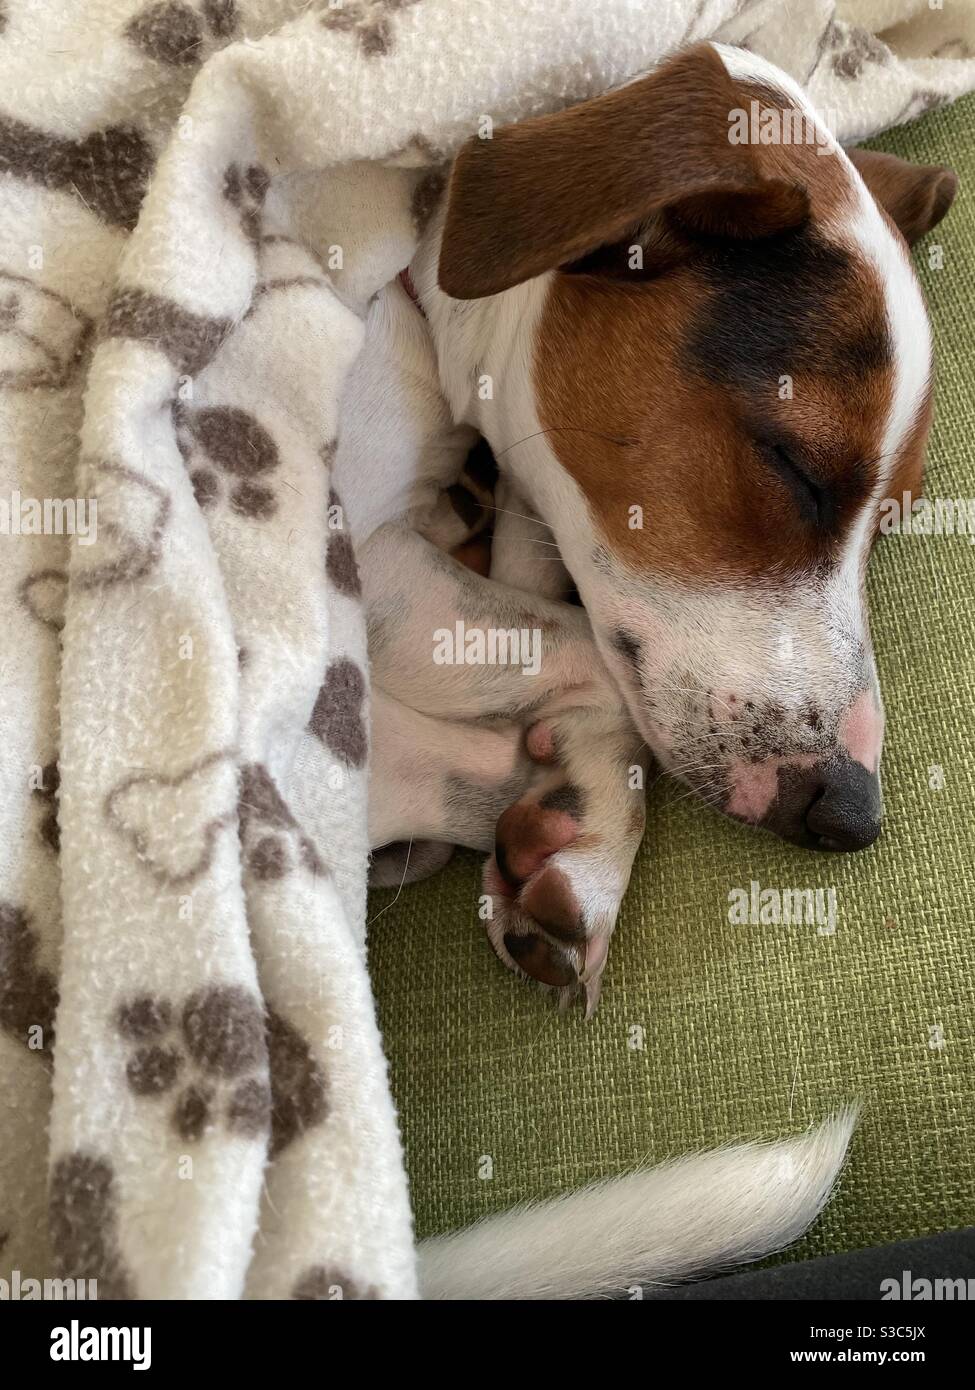 Sleeping dog with blanket Stock Photo